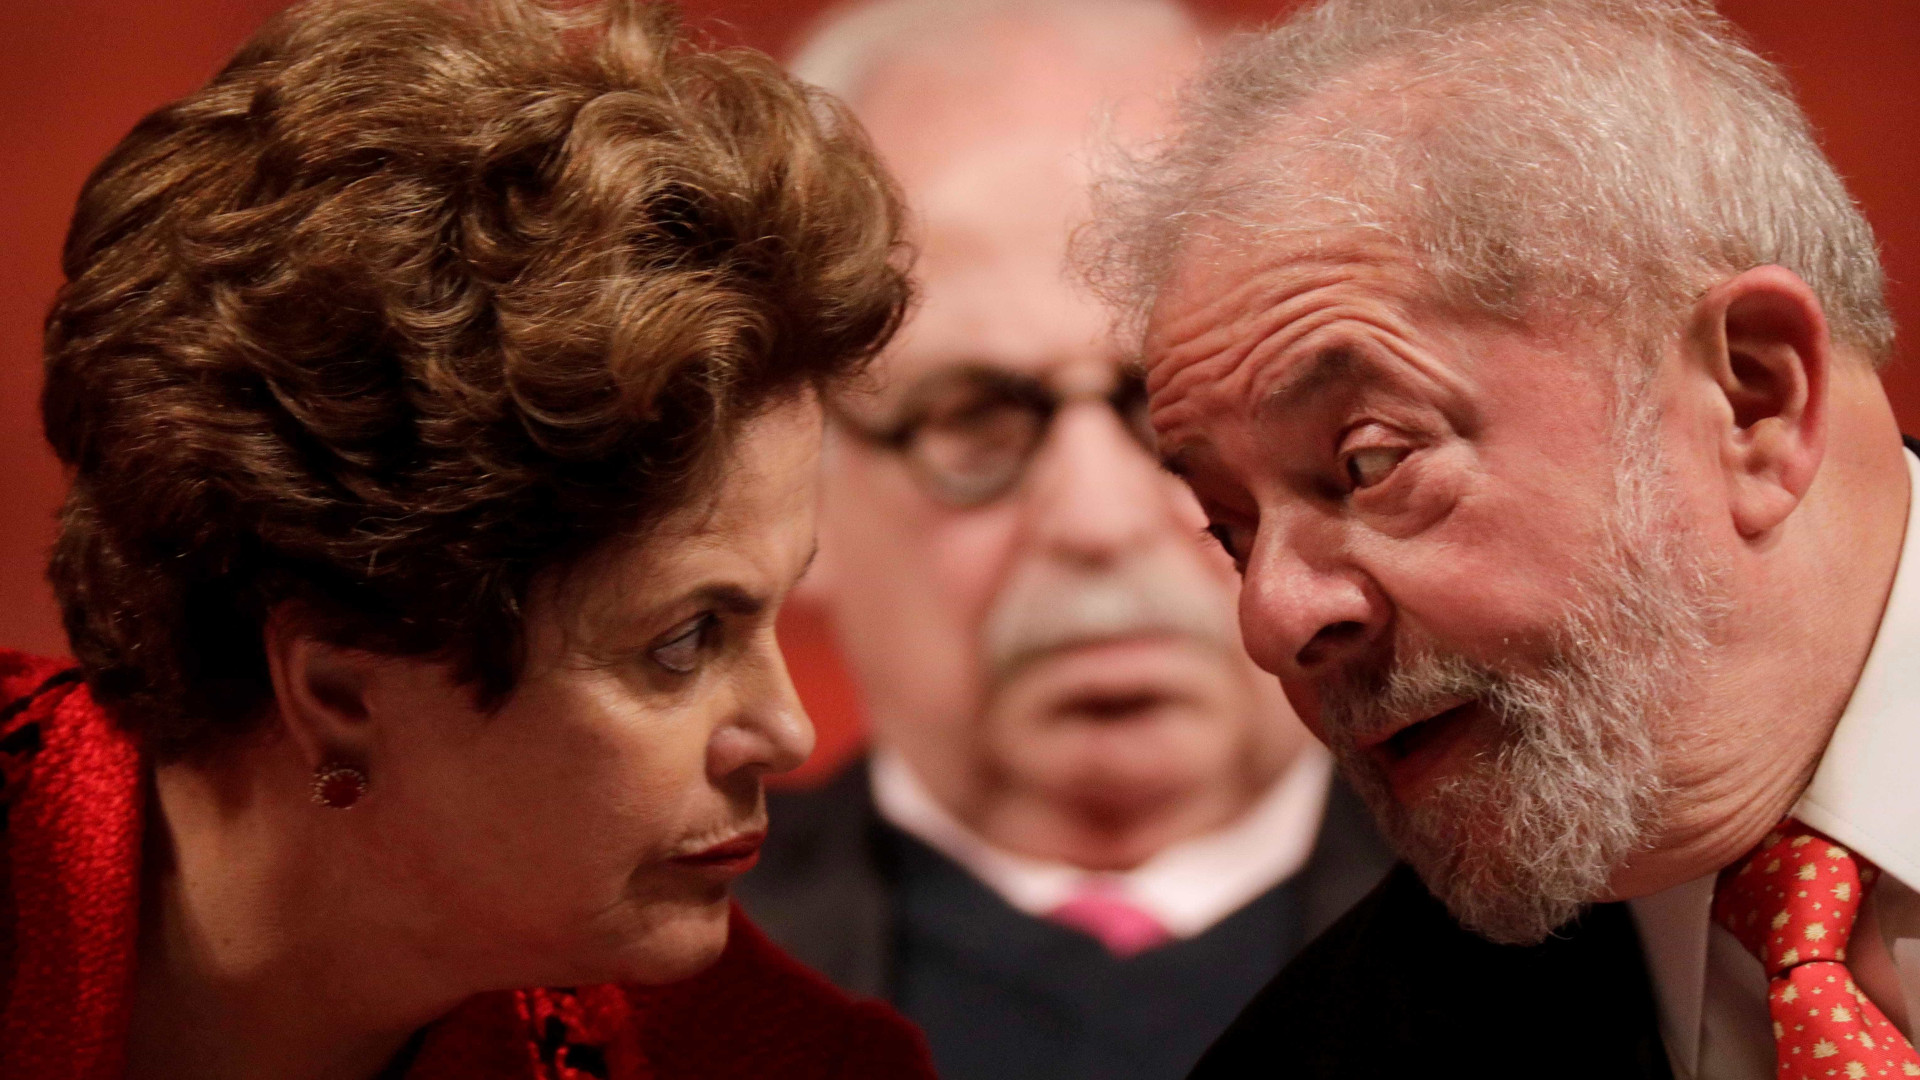 Justiça abre ação contra Lula e Dilma por 'quadrilhão'
